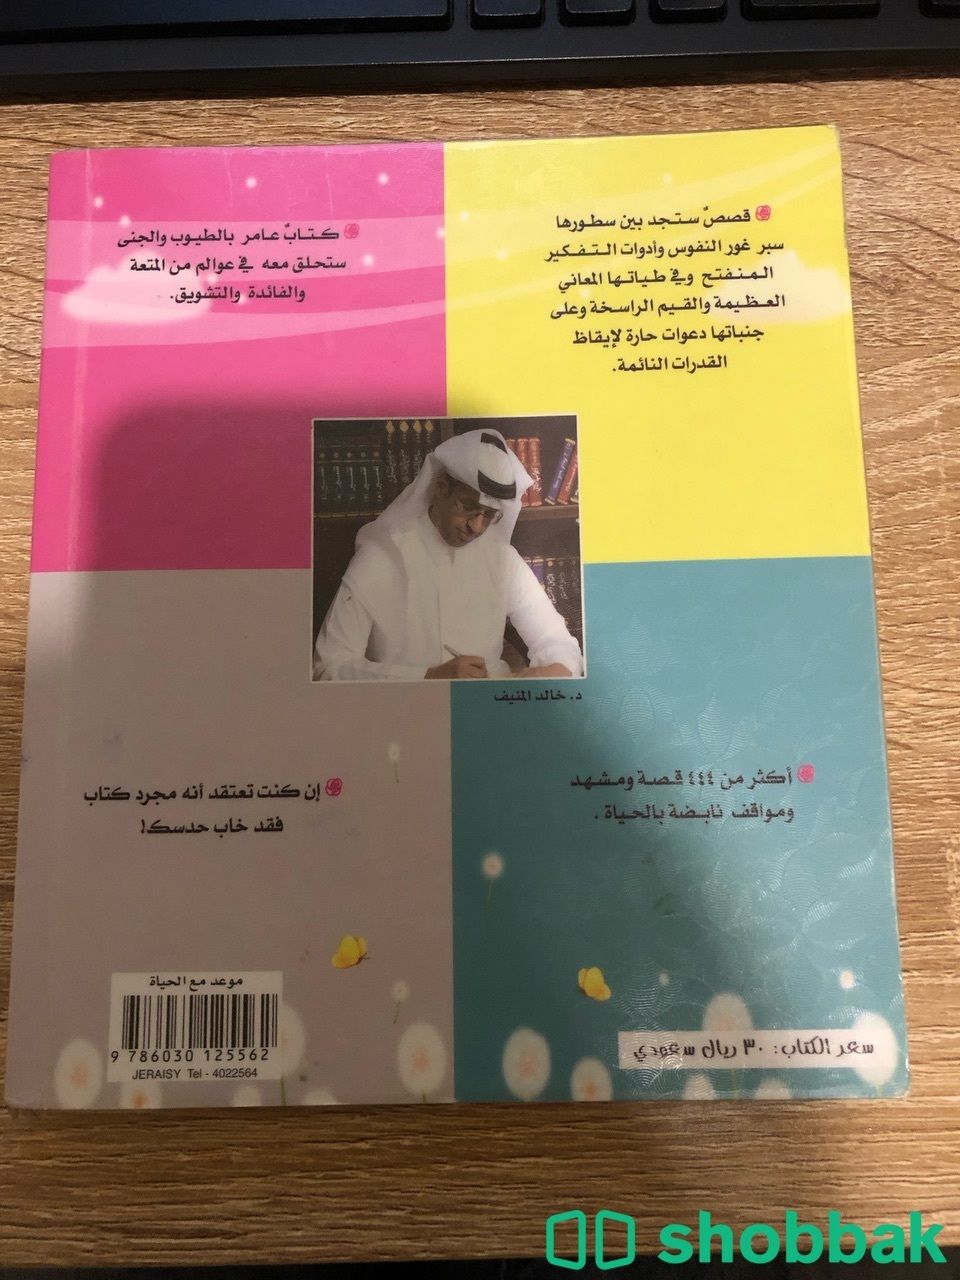 كتاب موعد مع الحياة Shobbak Saudi Arabia